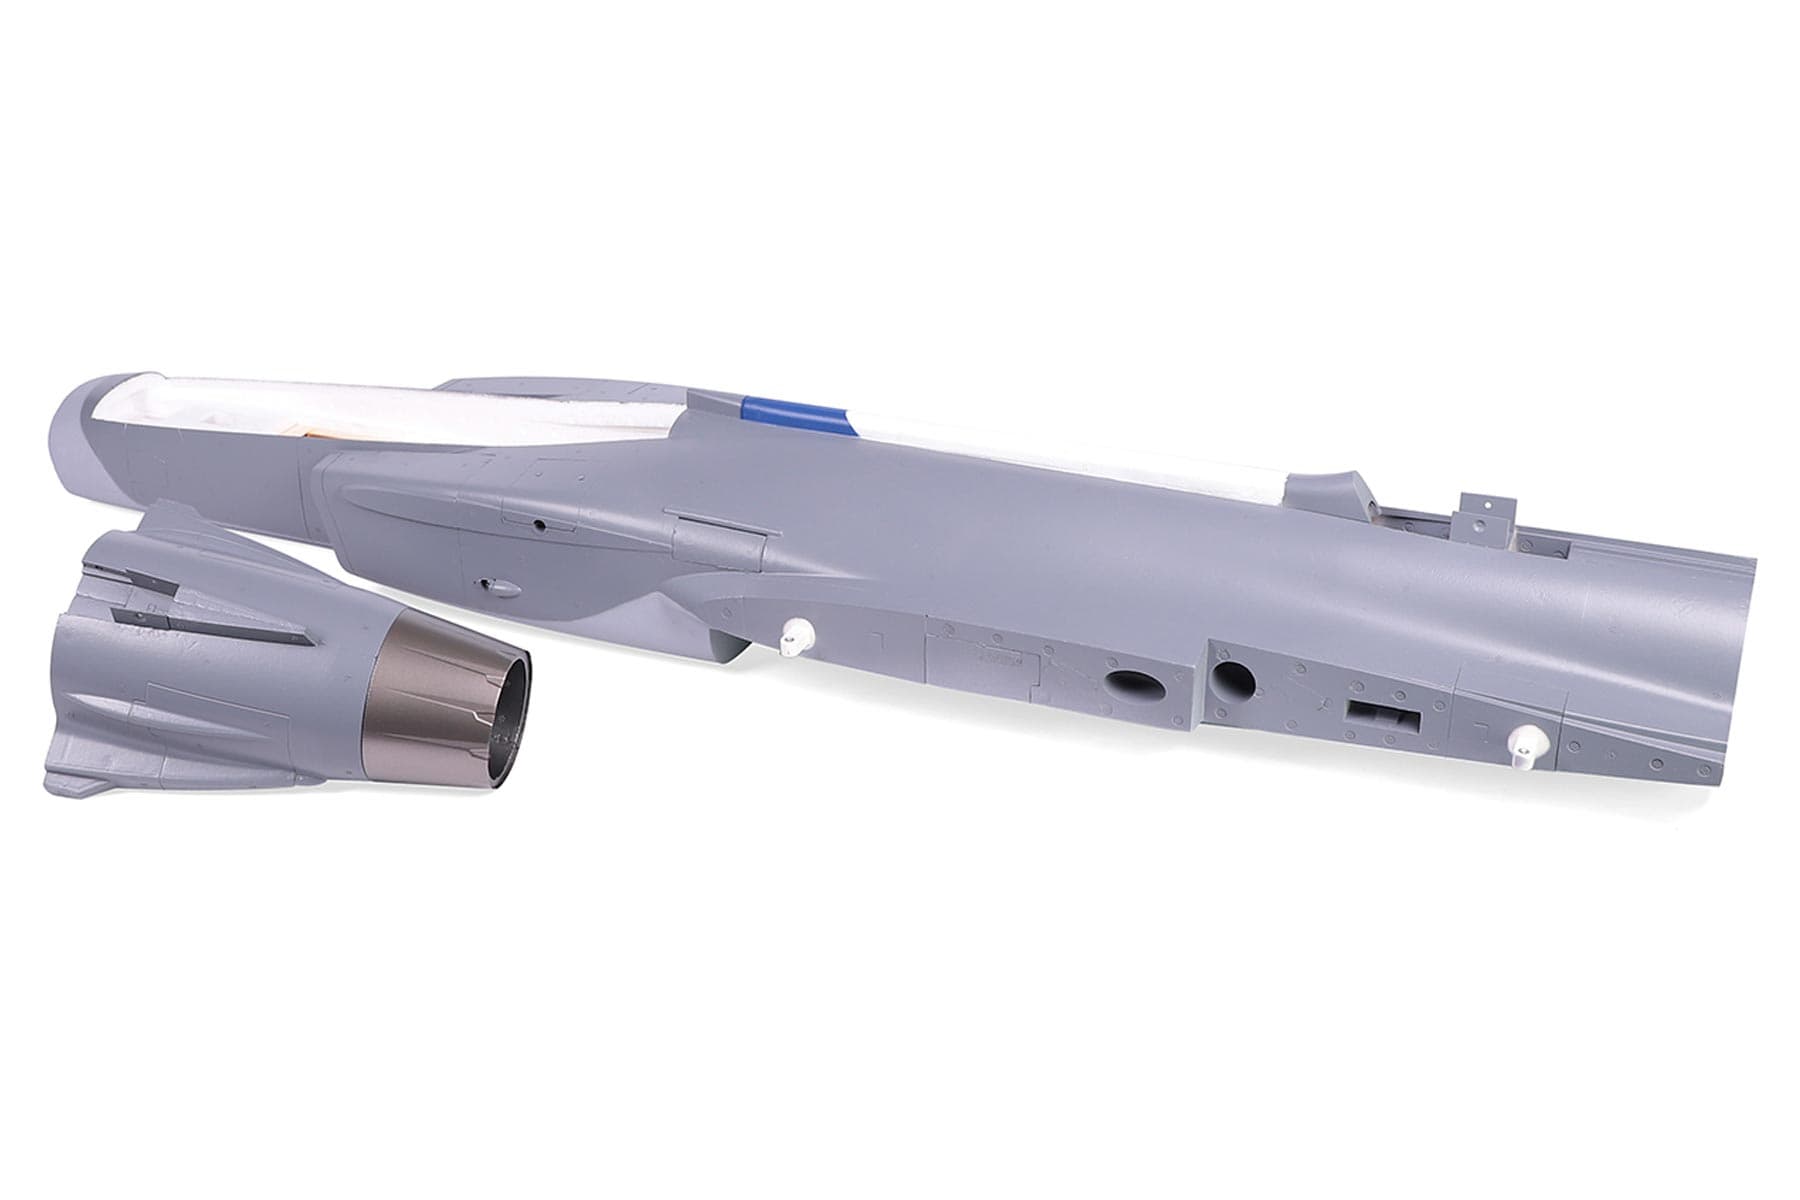 Freewing 80mm EDF JAS-39 Gripen Fuselage - (OPEN BOX) FJ2181101(OB)